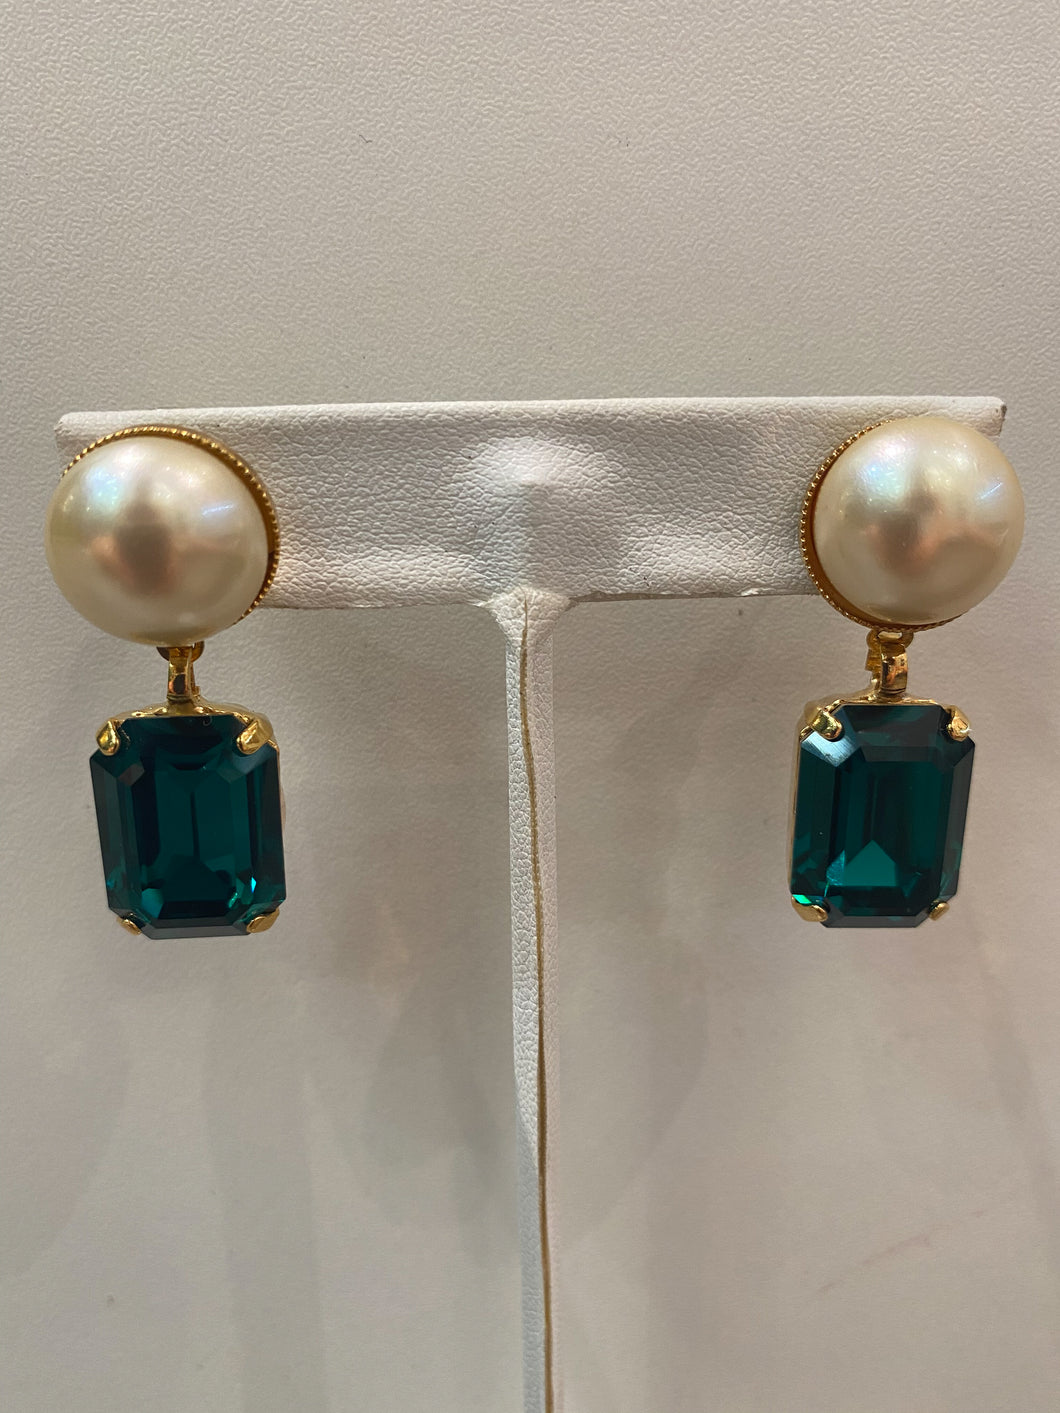 Harlequin Market Green Crystal Earrings with Faux Pearl-(Pierced Earrings)